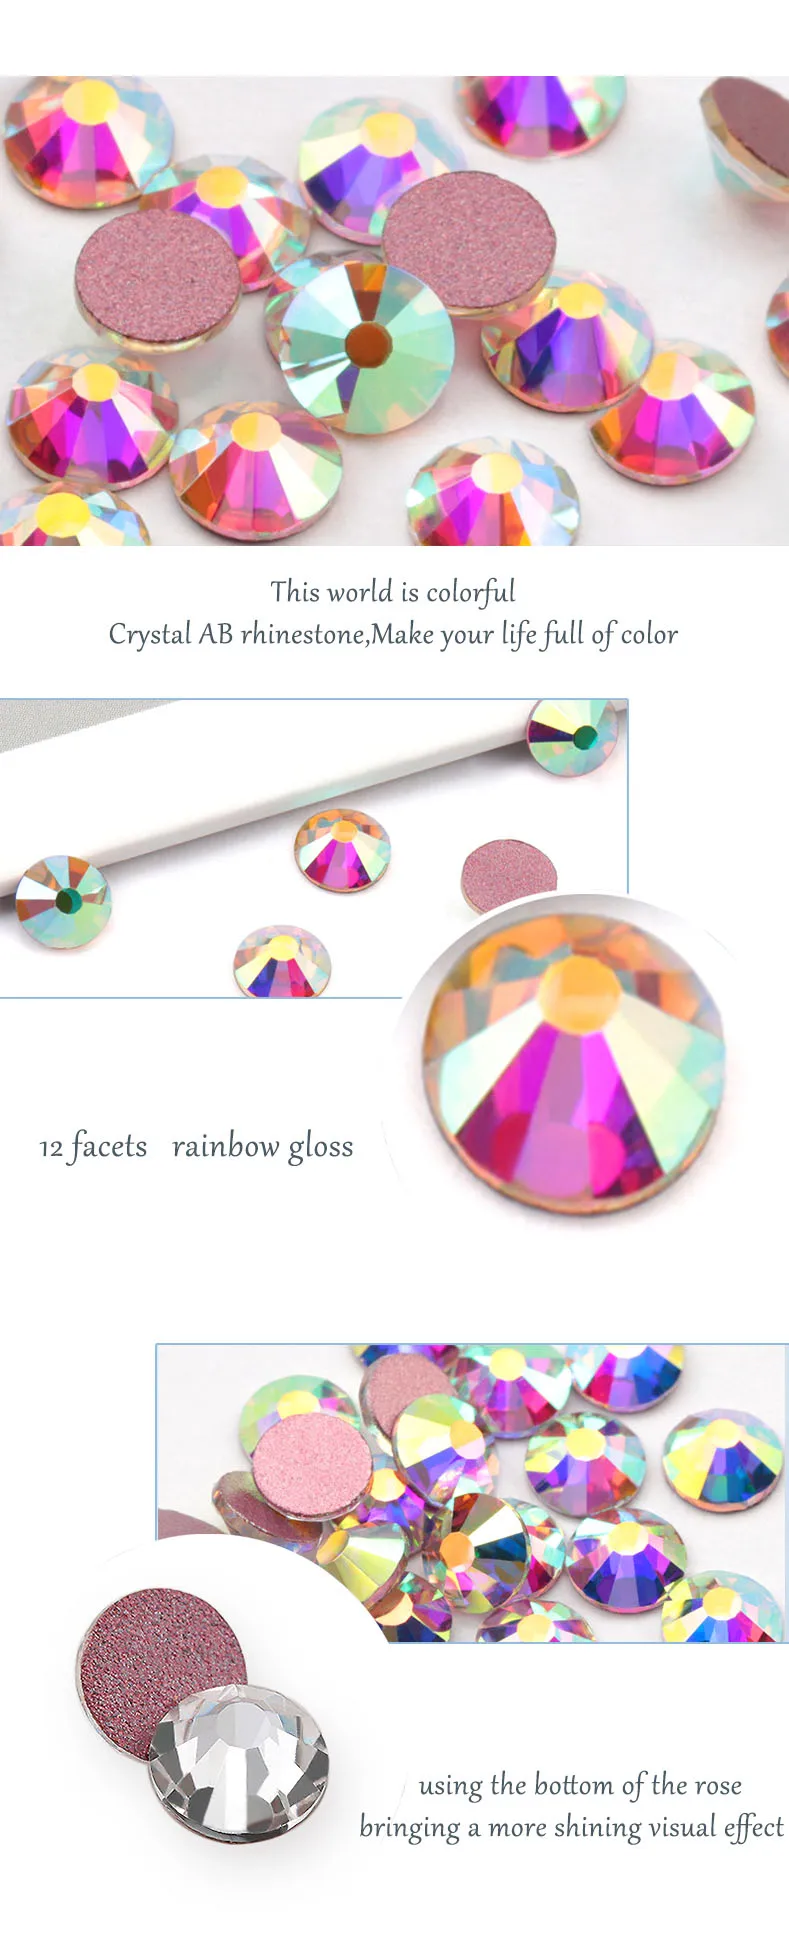 Стразы с блестками и кристаллами AB SS3-SS20, не горячая фиксация, розовая основа с плоским основанием, шитье стразами и тканевые Стразы для одежды, камень для дизайна ногтей